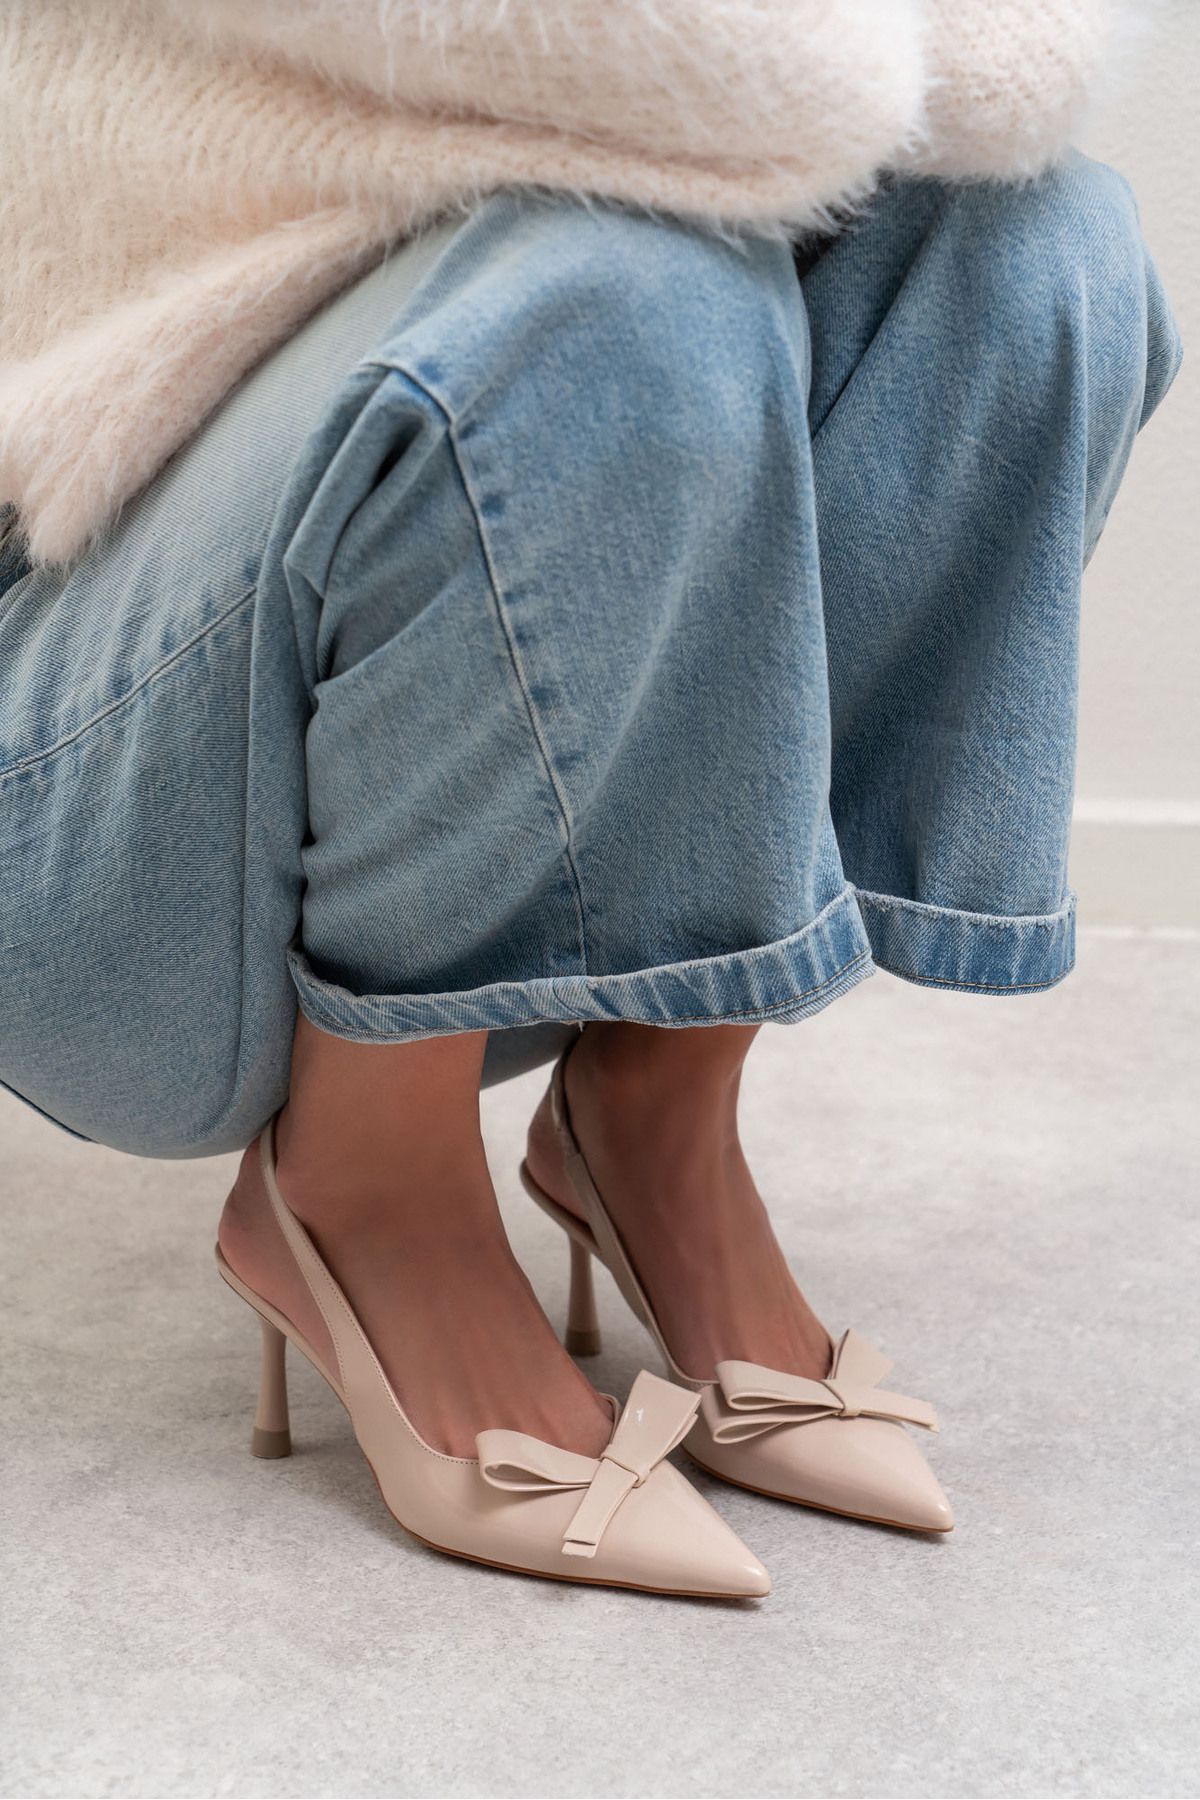 NİŞANTAŞI SHOES Lucinda Bej Rugan Fiyonk Detay Bilek Bağlı Kadın Topuklu Ayakkabı